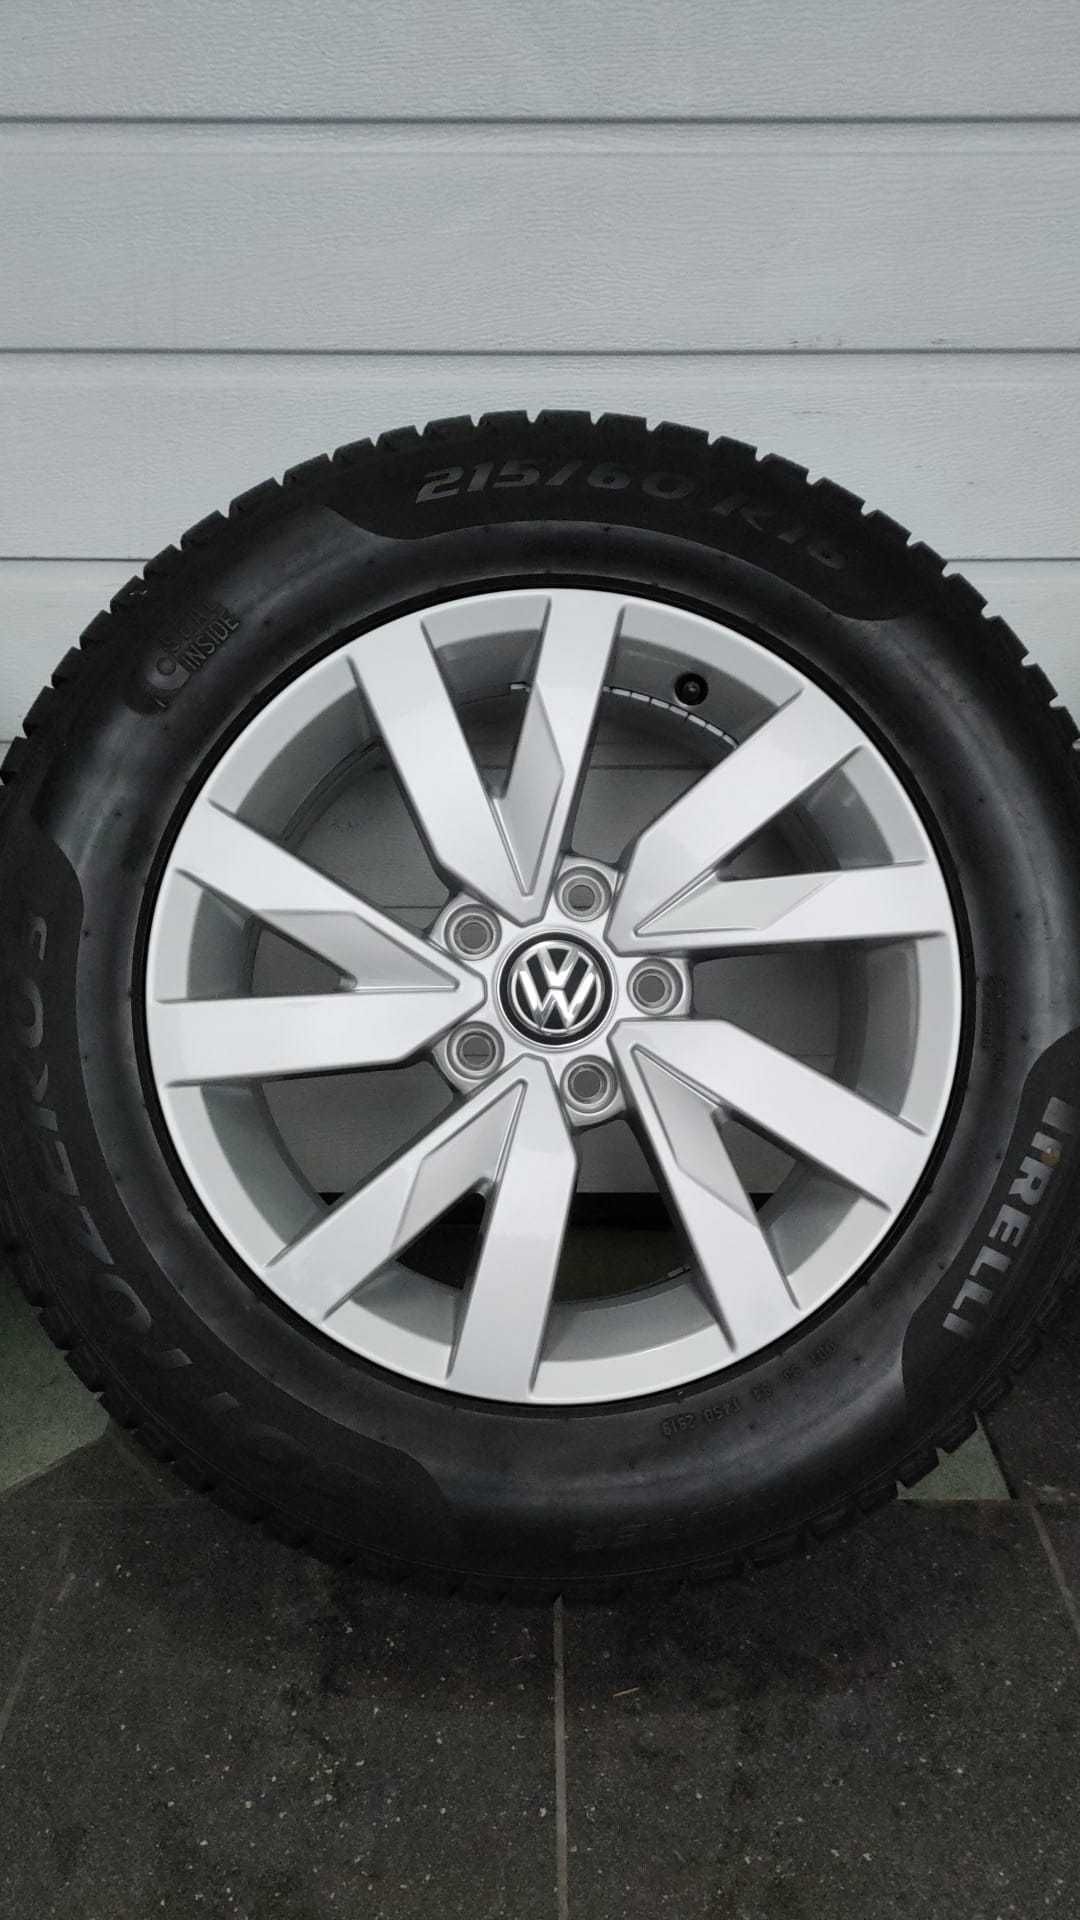 Koła 16' VW Passat B8 5x112 opony zima 215/60/16 Pirelli (OL1546)